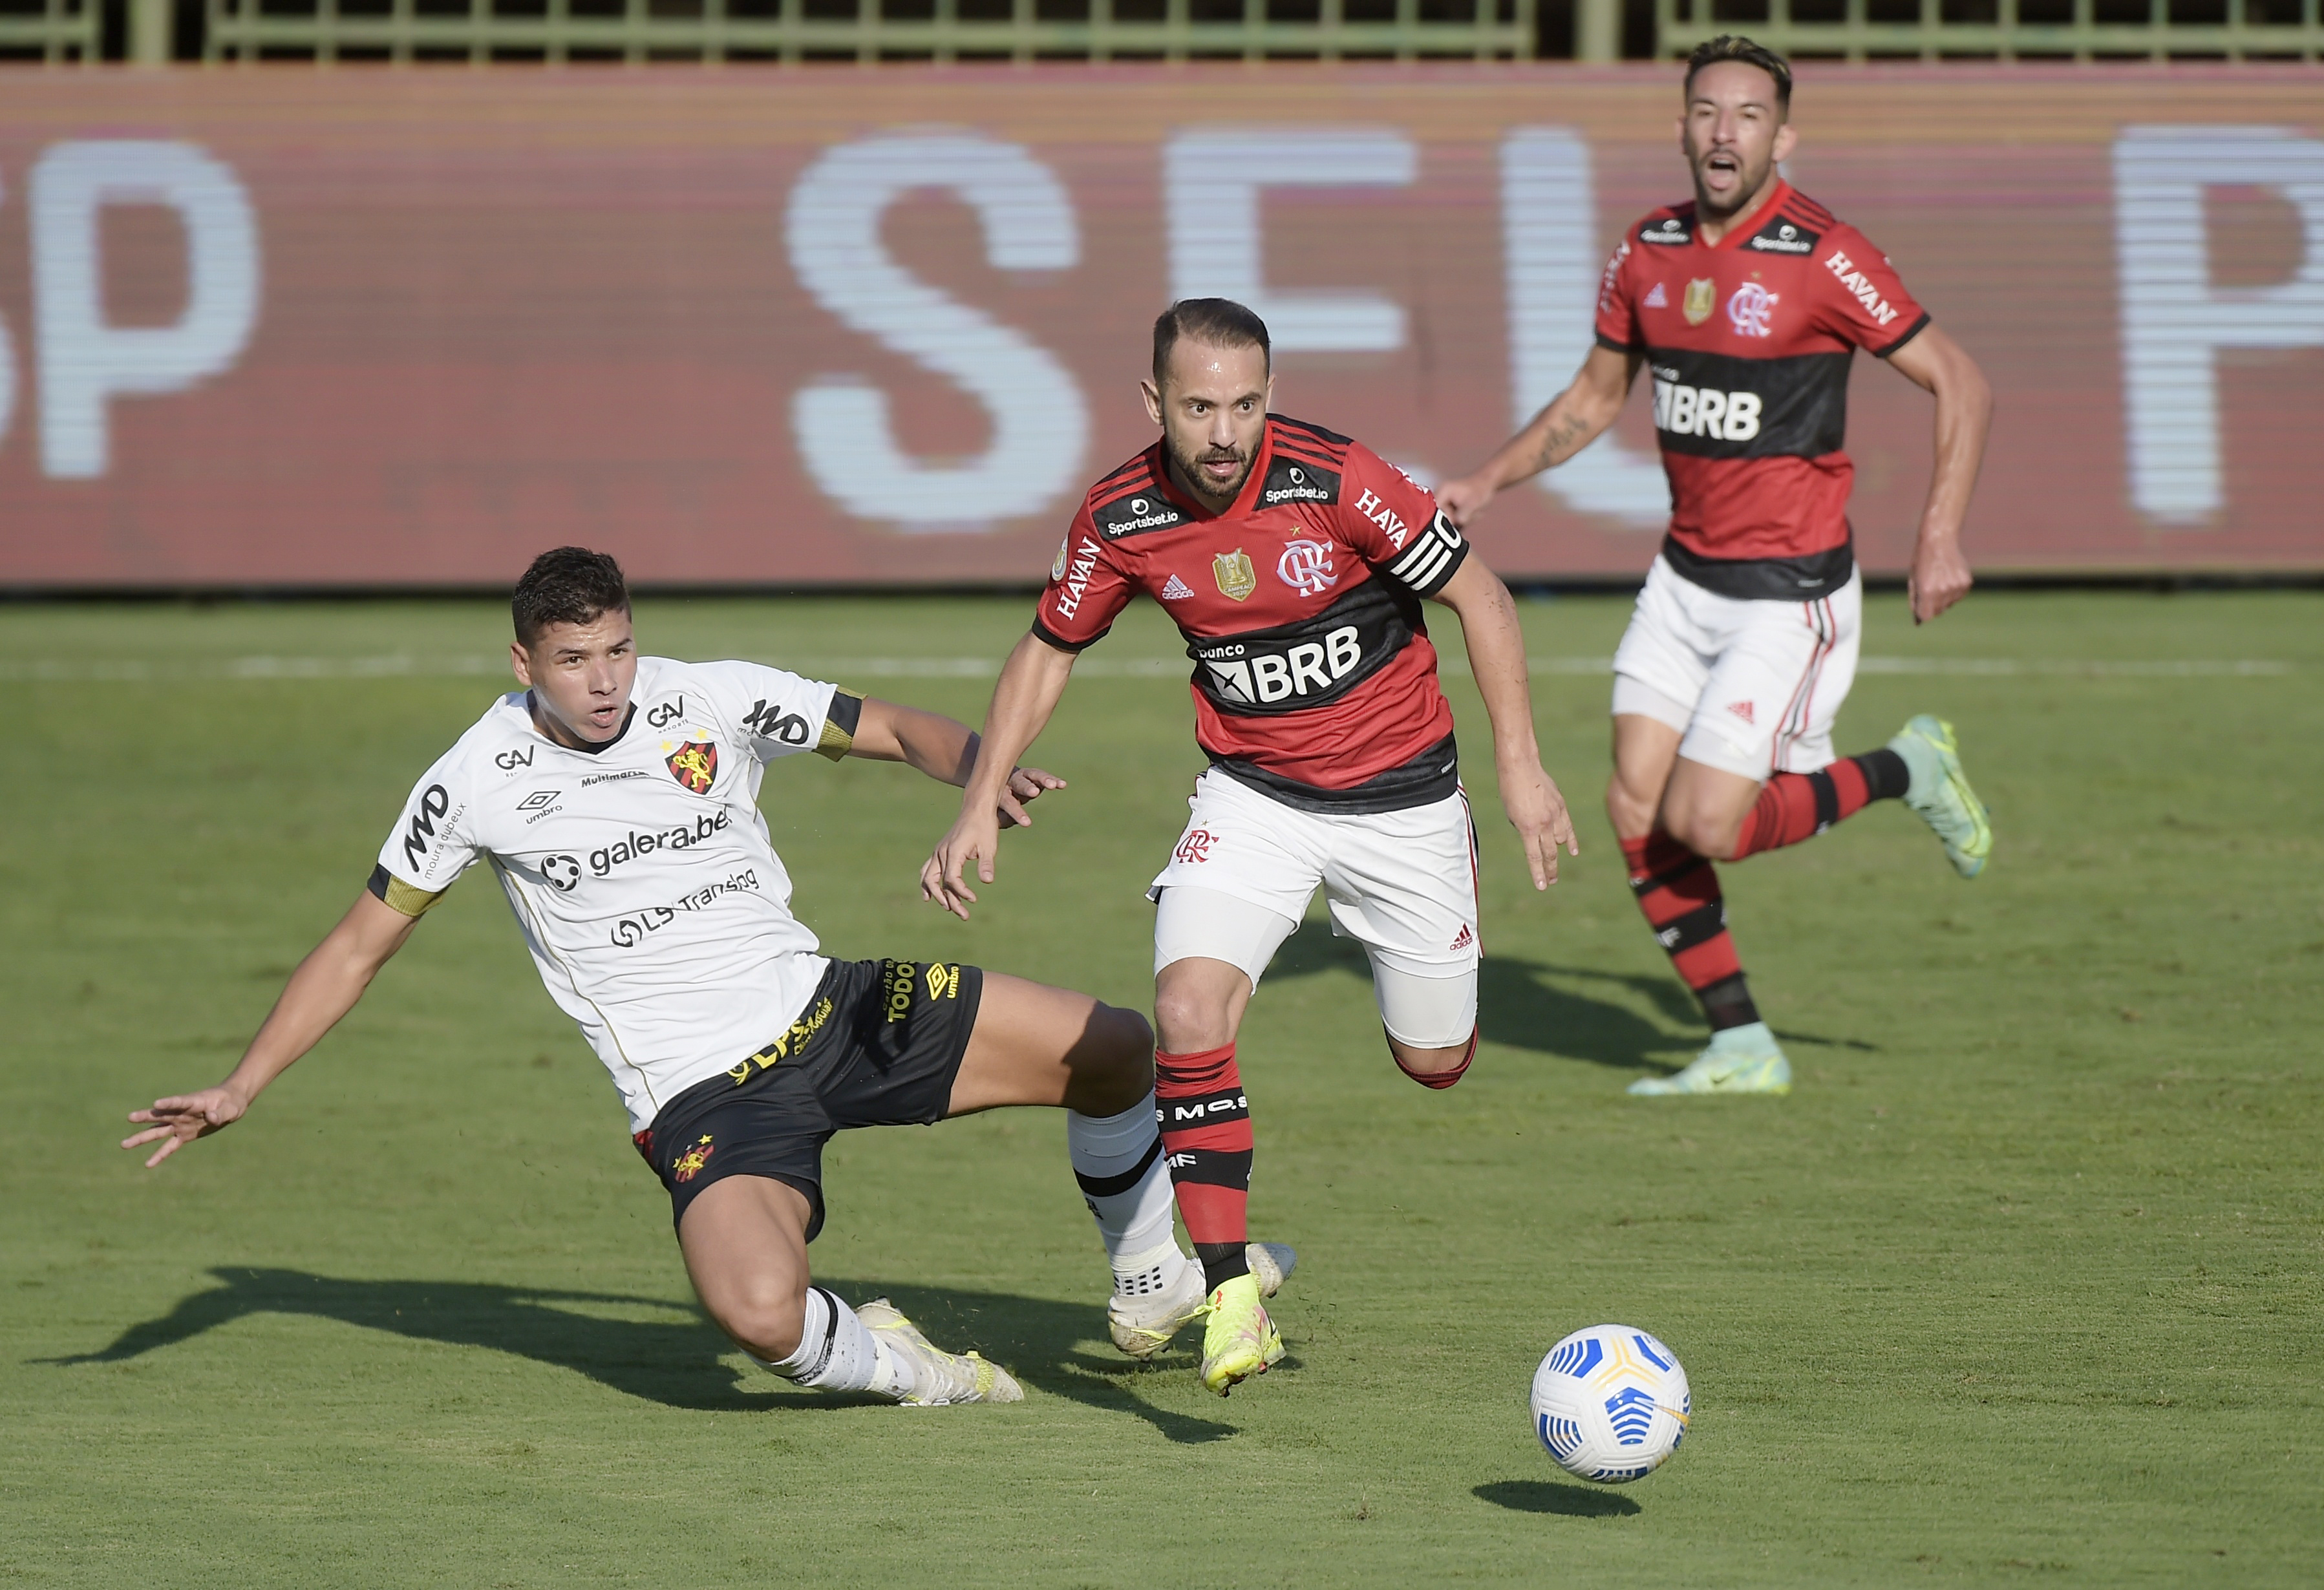 Flamengo on X:  GOOOOOOOOOOOOOOOOOOOOOOOOOOOOOOOOOOOOOOOOOOOOOOOOOOOOOOOOOOOOOOOOOOOOOOOOOOOOOOOOOOOOOOOOOOOOOOOOOOOOOOOOOOOOOOOOOOOOOOOOOOOOOL!  BRUNO HENRIQUEEEEEEEEEEEEEEEEEEEEEEEEEEEEEE!  / X